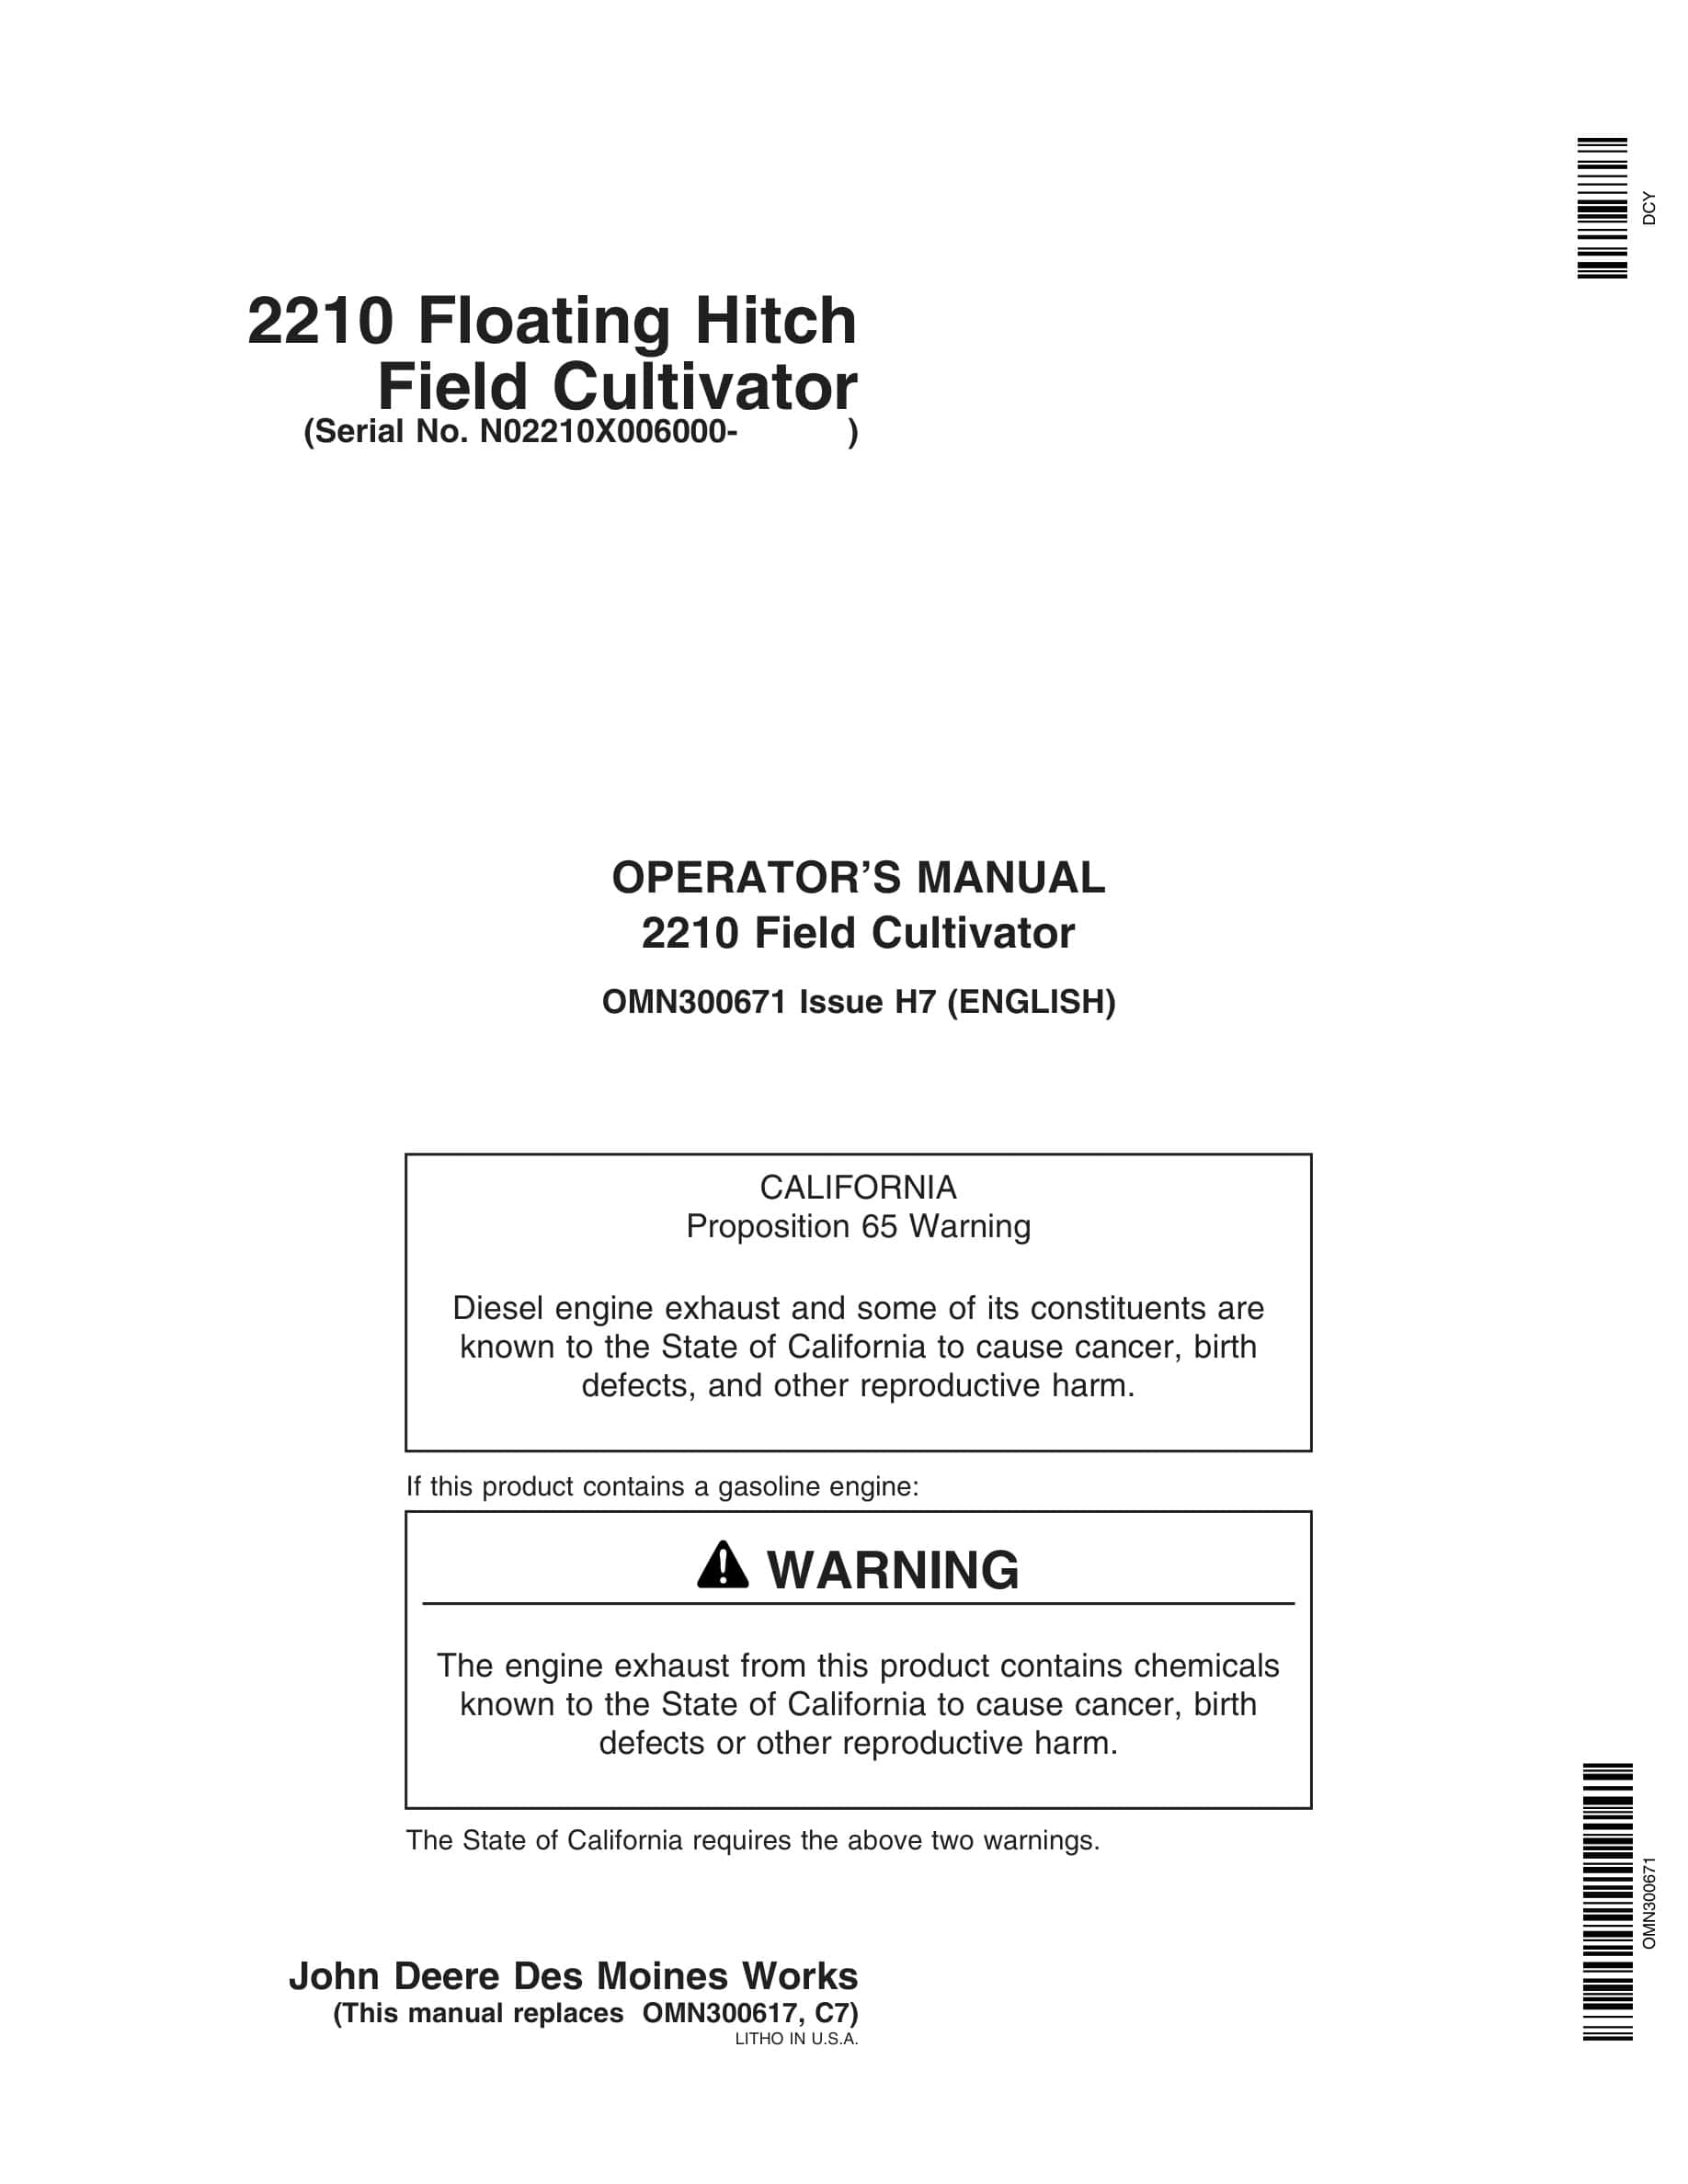 John Deere 2210 Floating Hitch Field Cultivator Operator Manual OMN300671-1